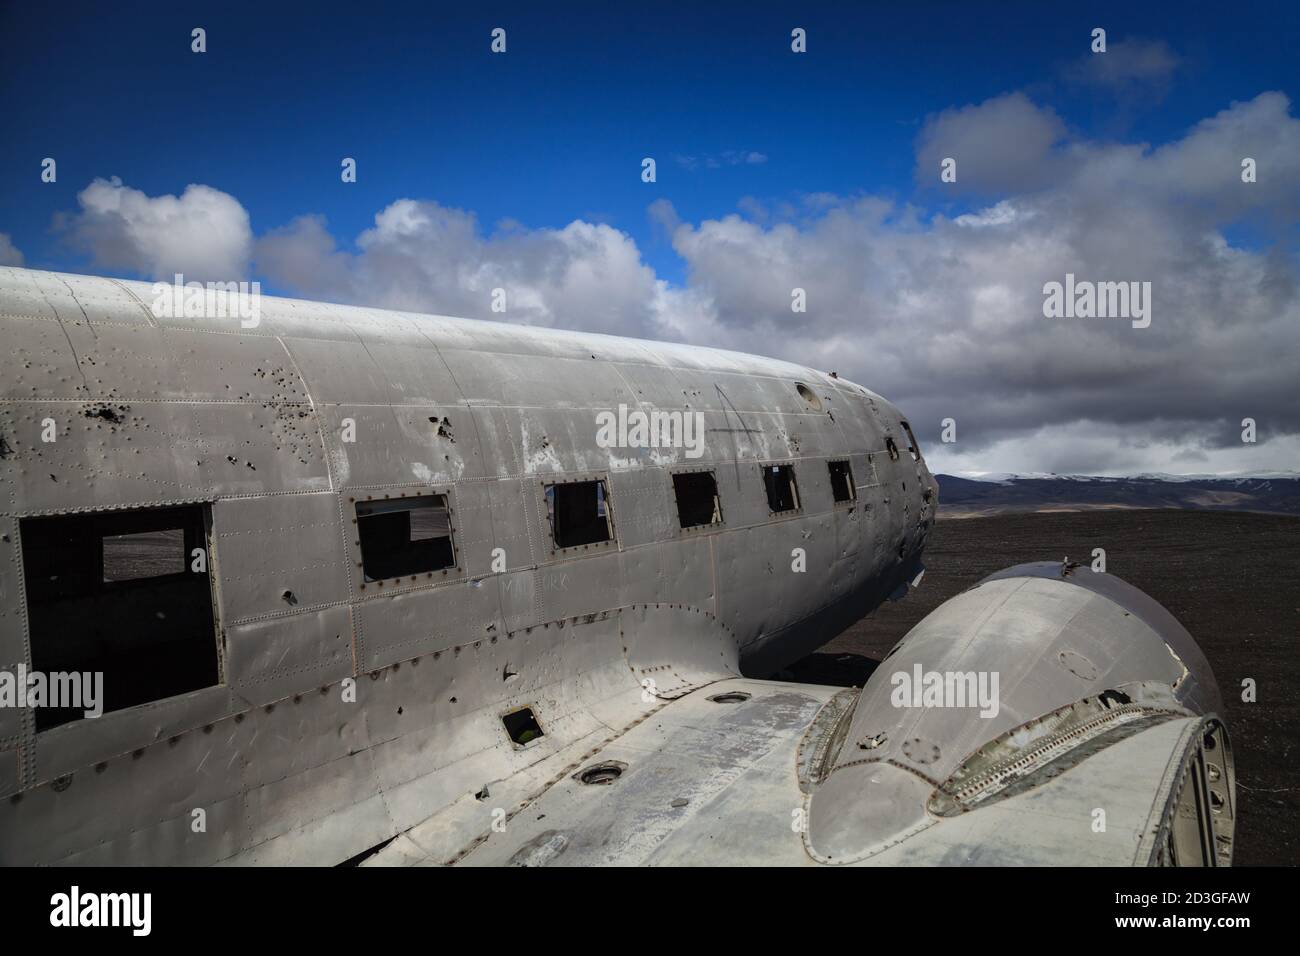 Épave abandonnée de l'avion écrasé US Navy Douglas C-47 Skytrain (basé sur DC-3), épave d'avion sur la plage noire à Sólheimasandur, sud de l'Islande Banque D'Images